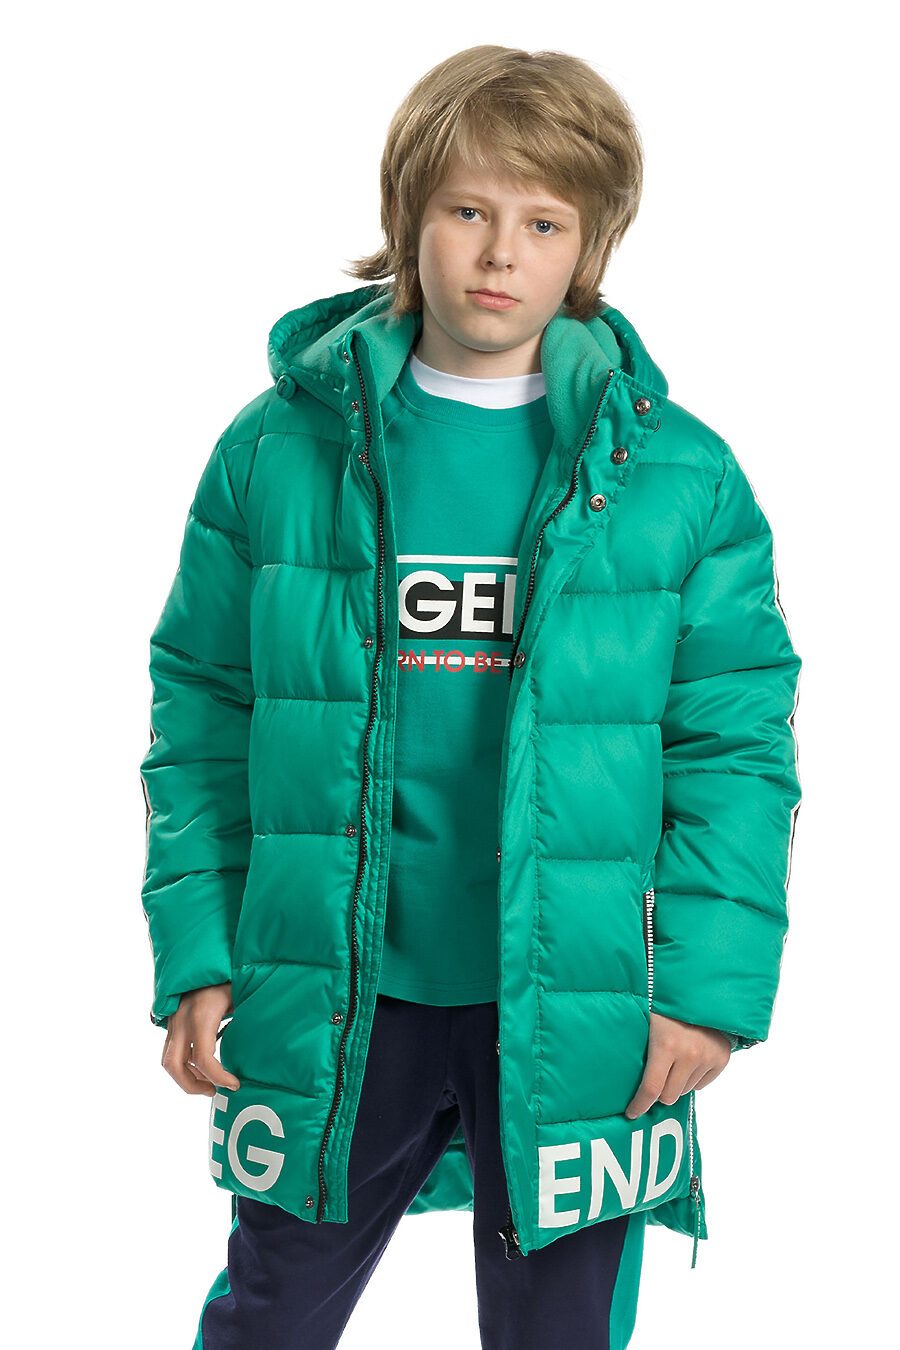 Мальчик в зеленой куртке